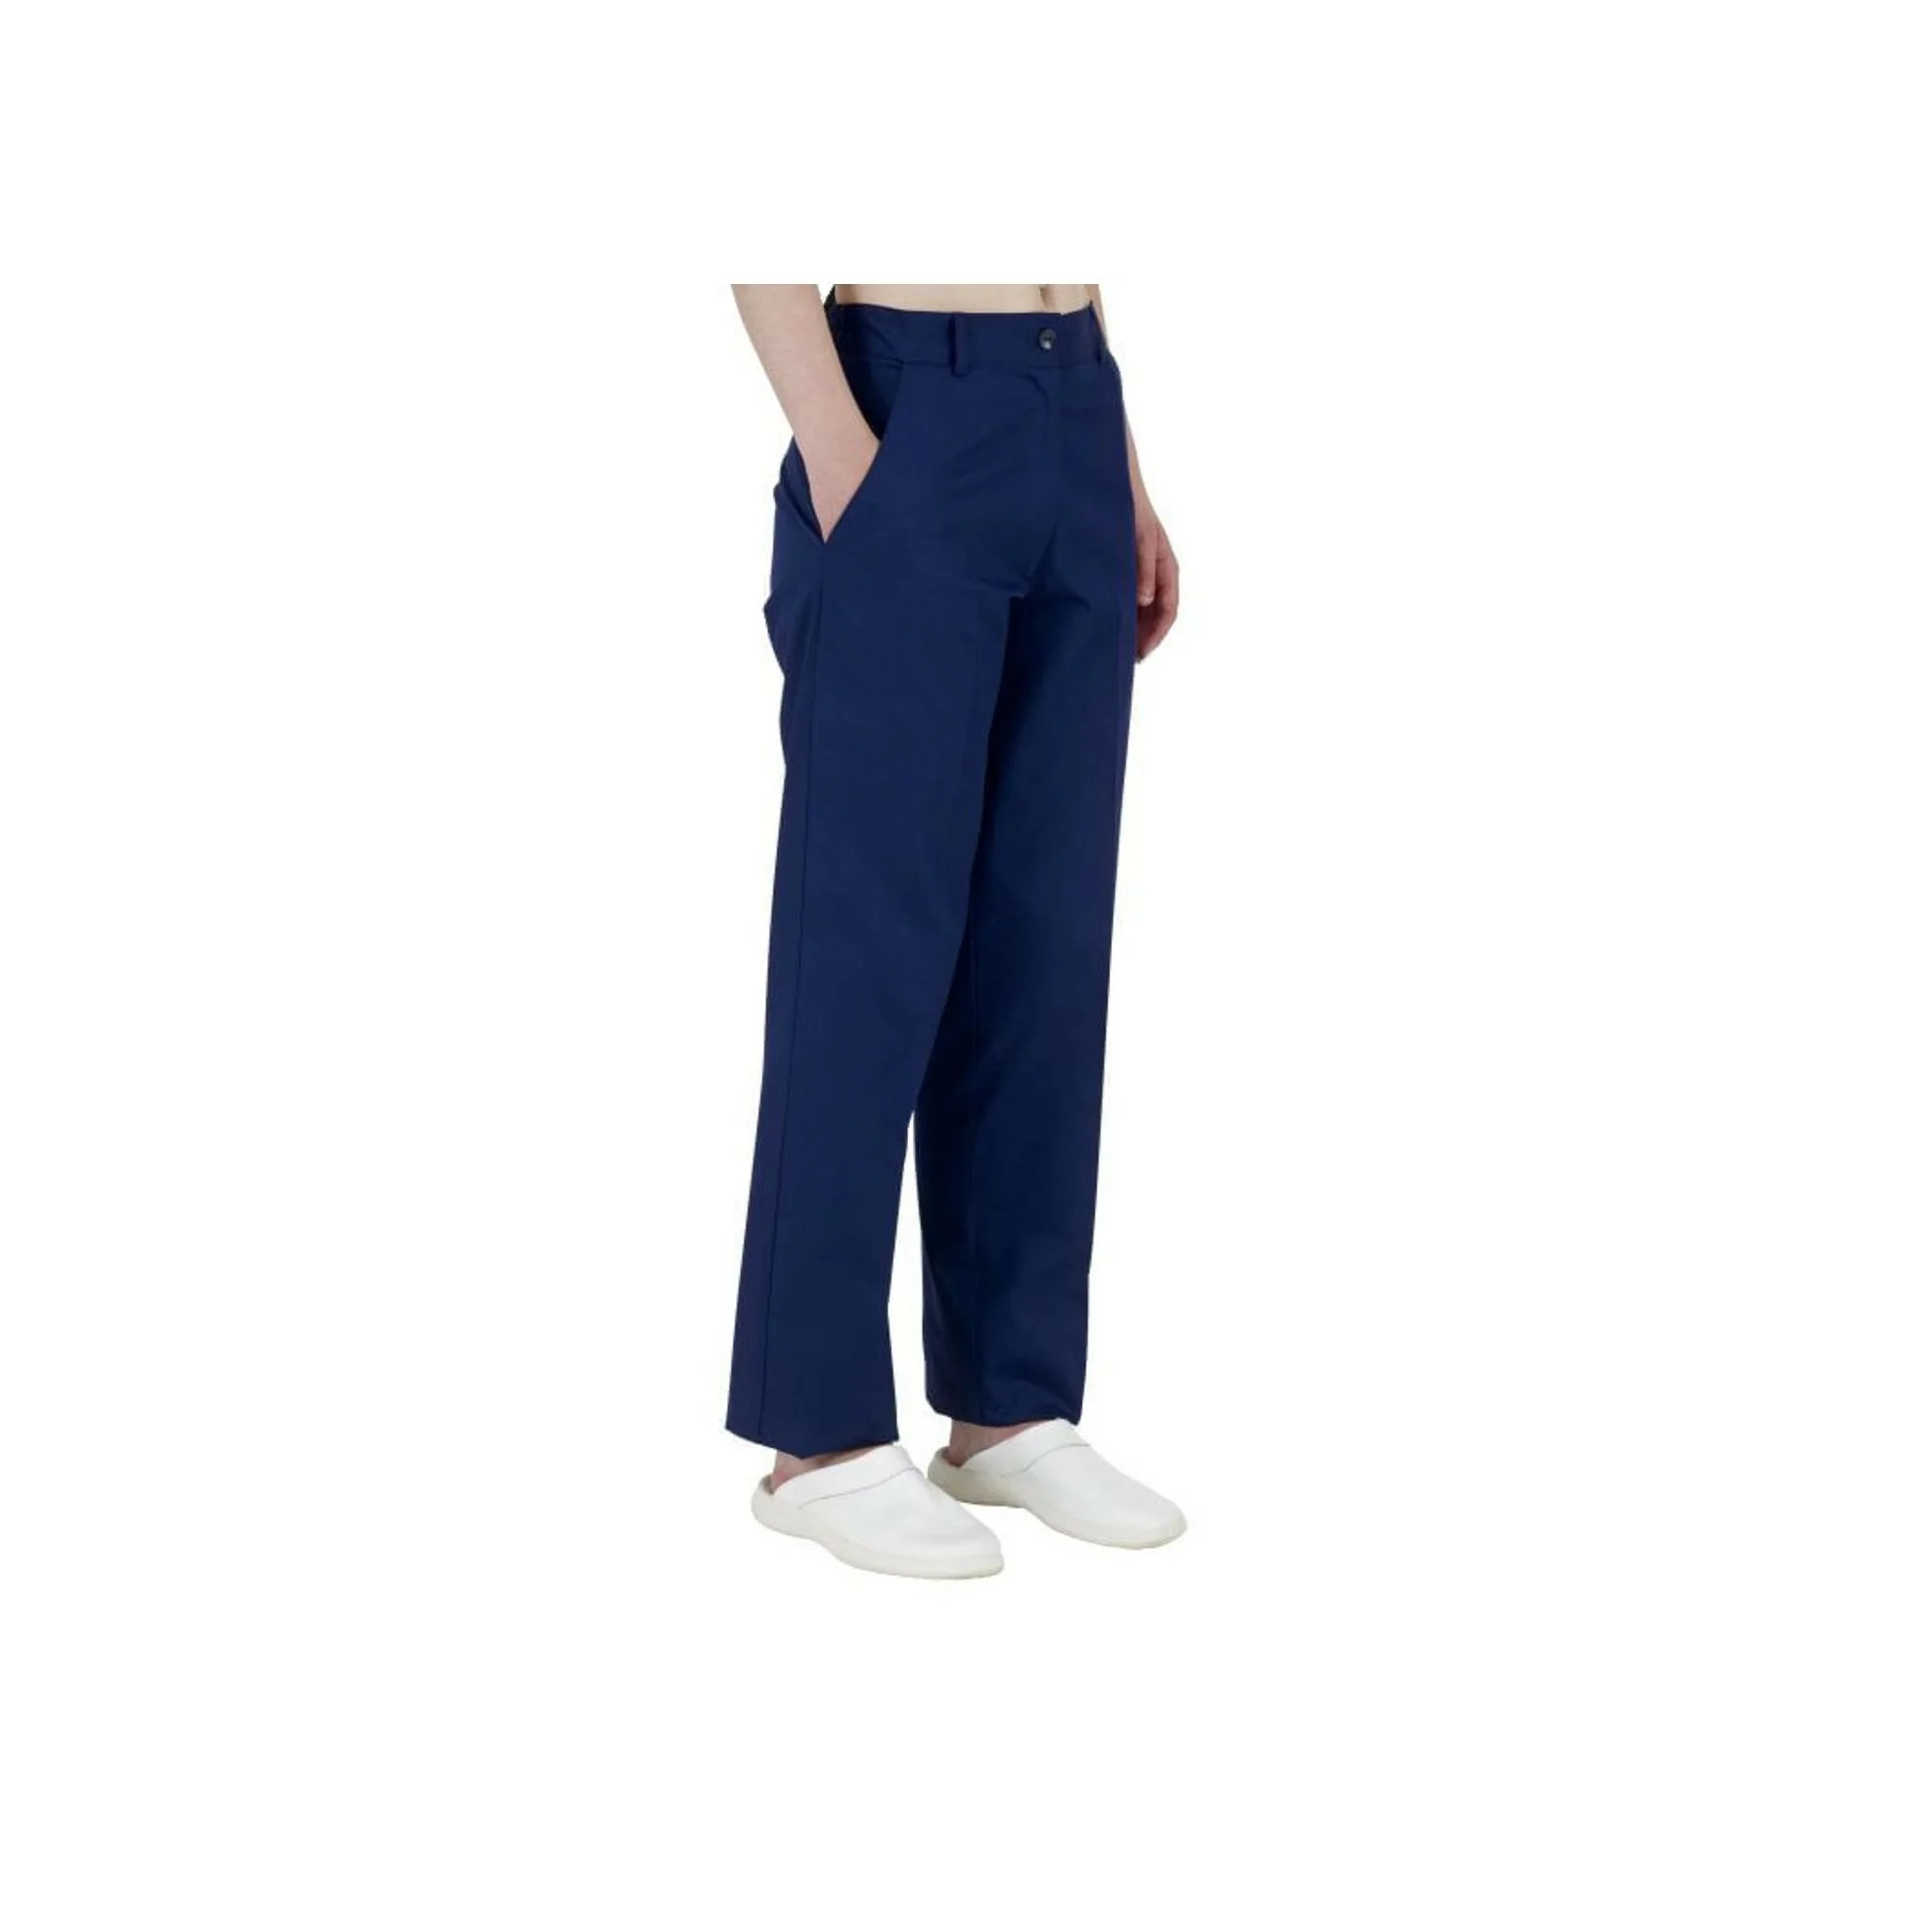 Haiti - Pantalon - Femme - Ceinture élastique - 2 poches côtés